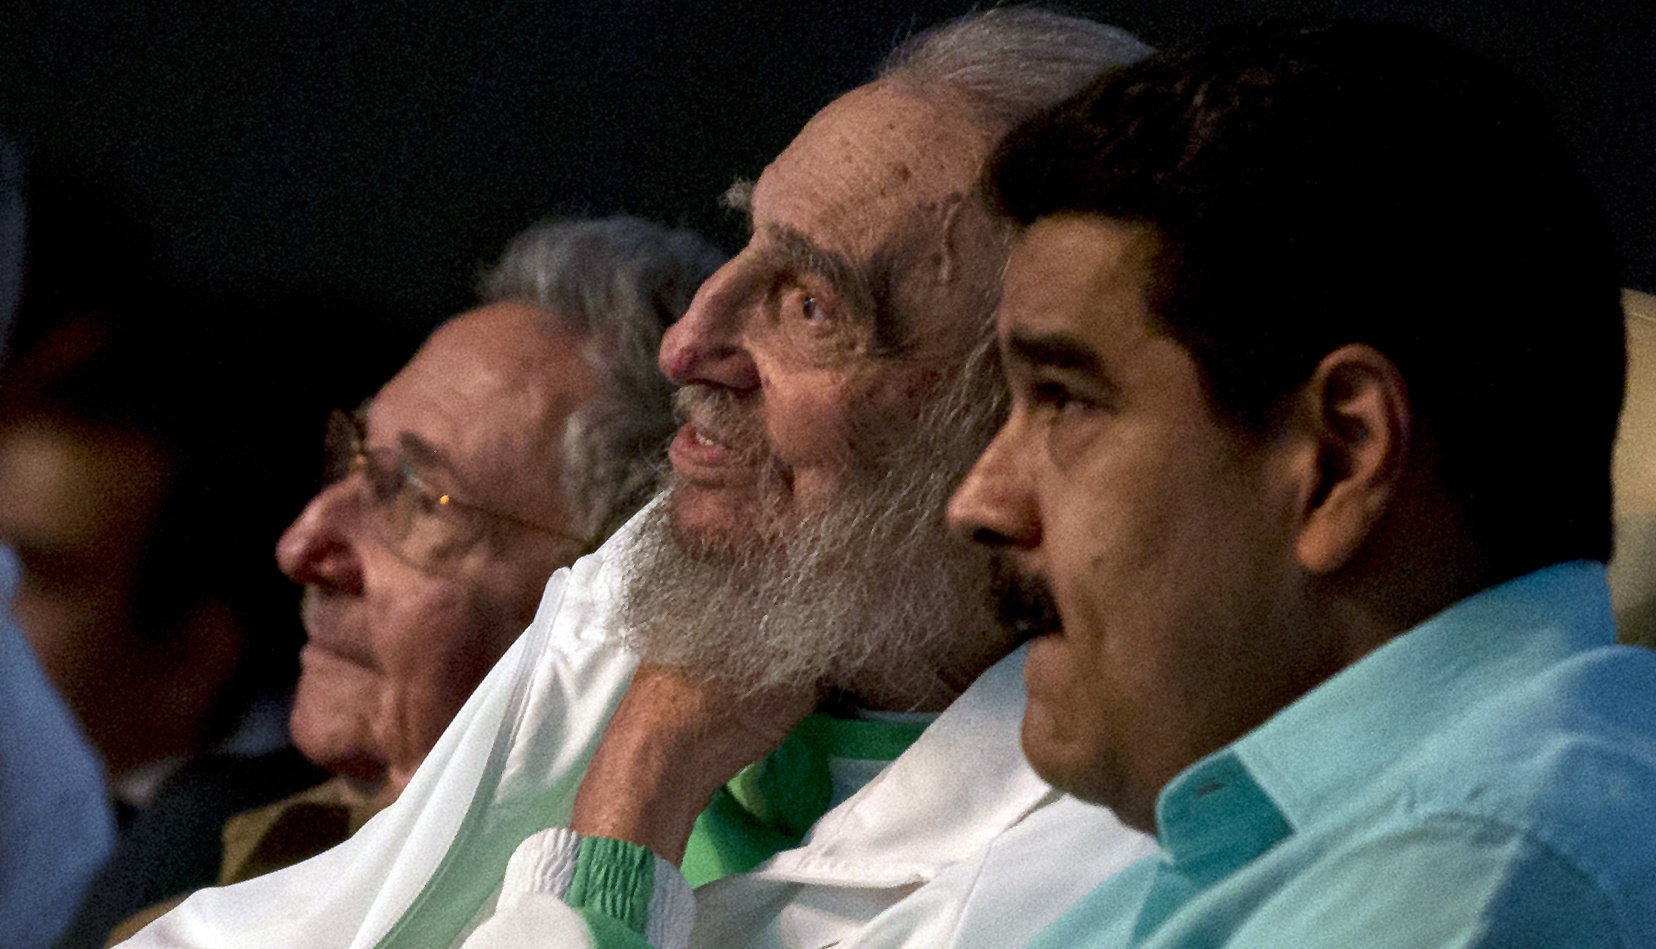 Fidel Castro asiste a celebración por sus 90 años en La Habana